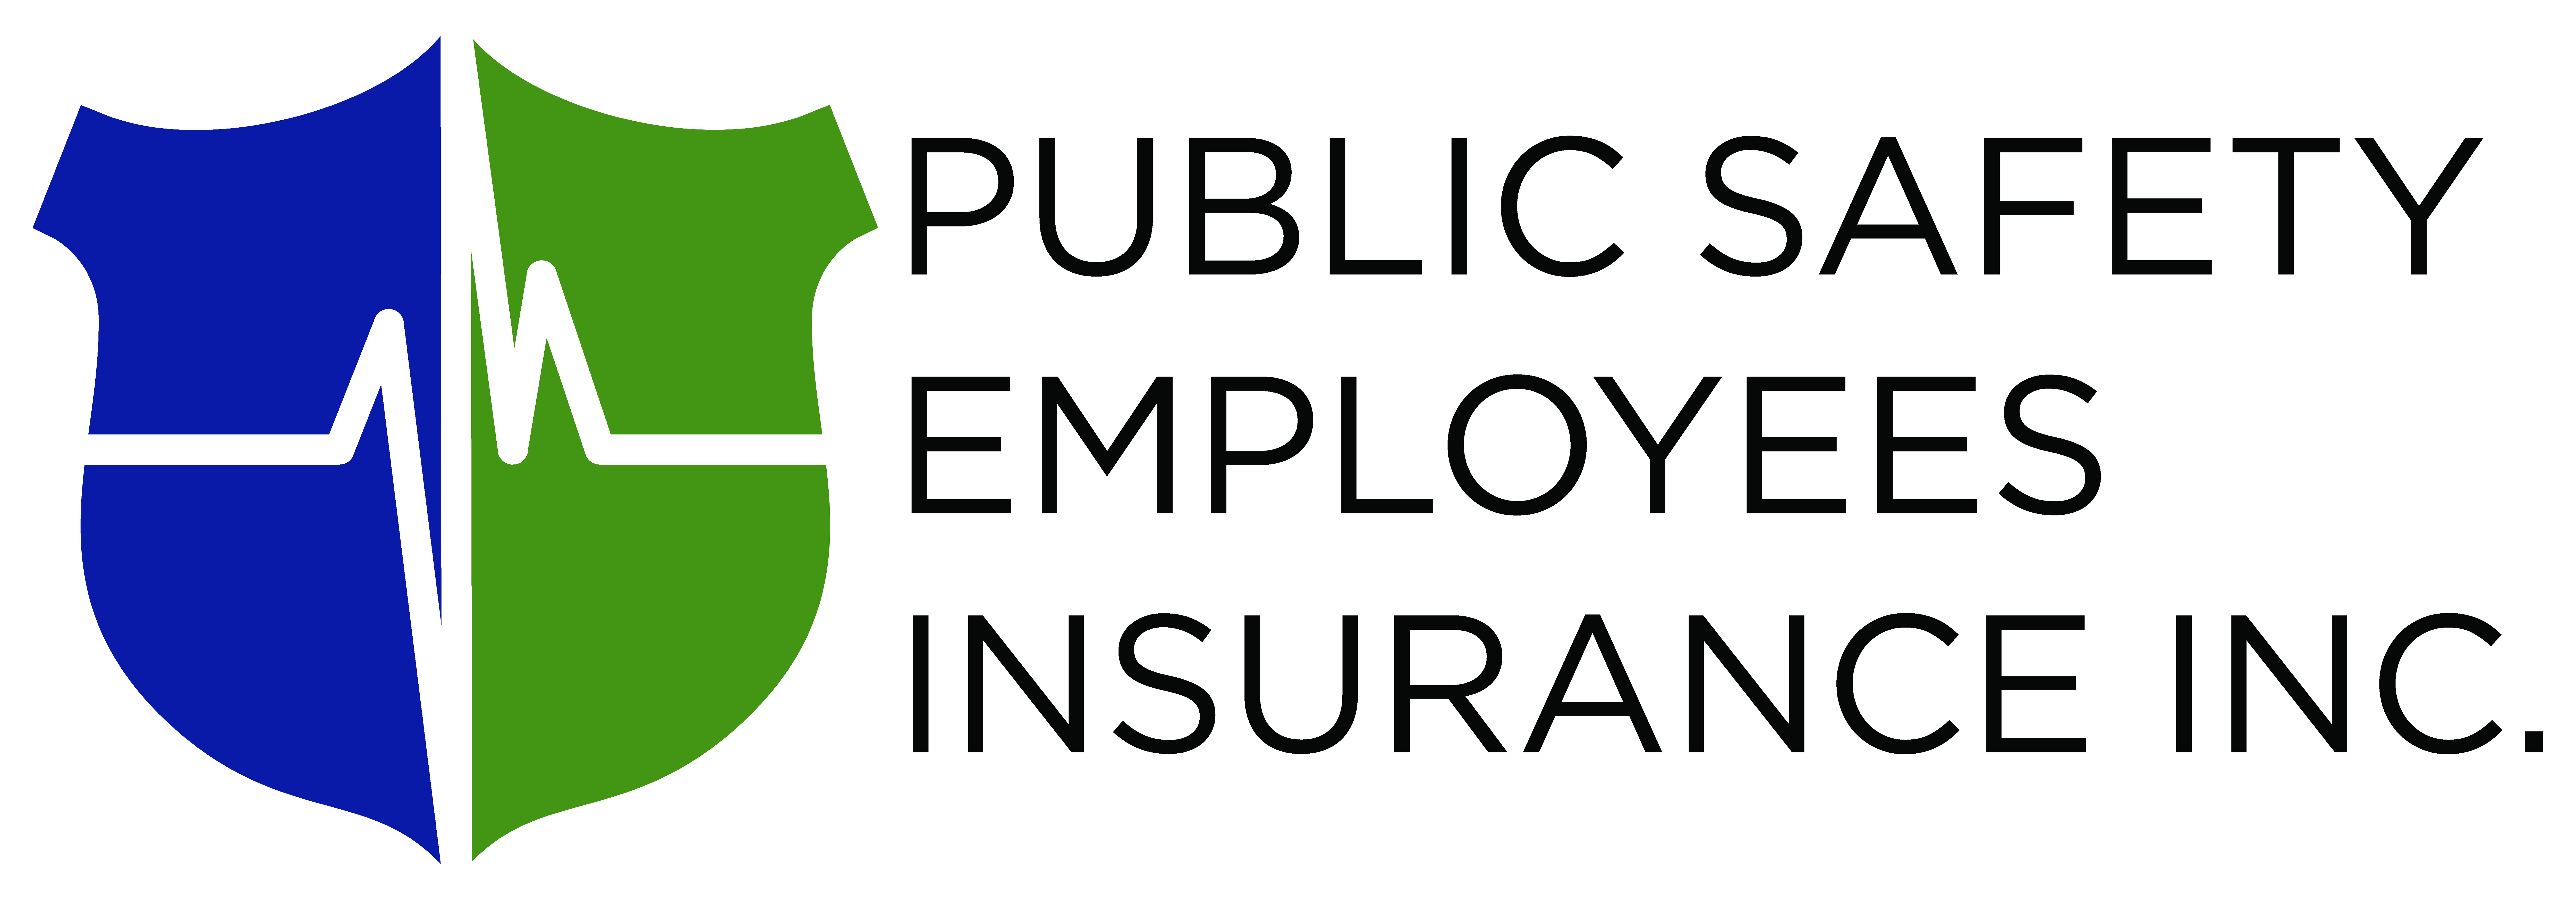 Public Safety Employees Insurance Inc. logo